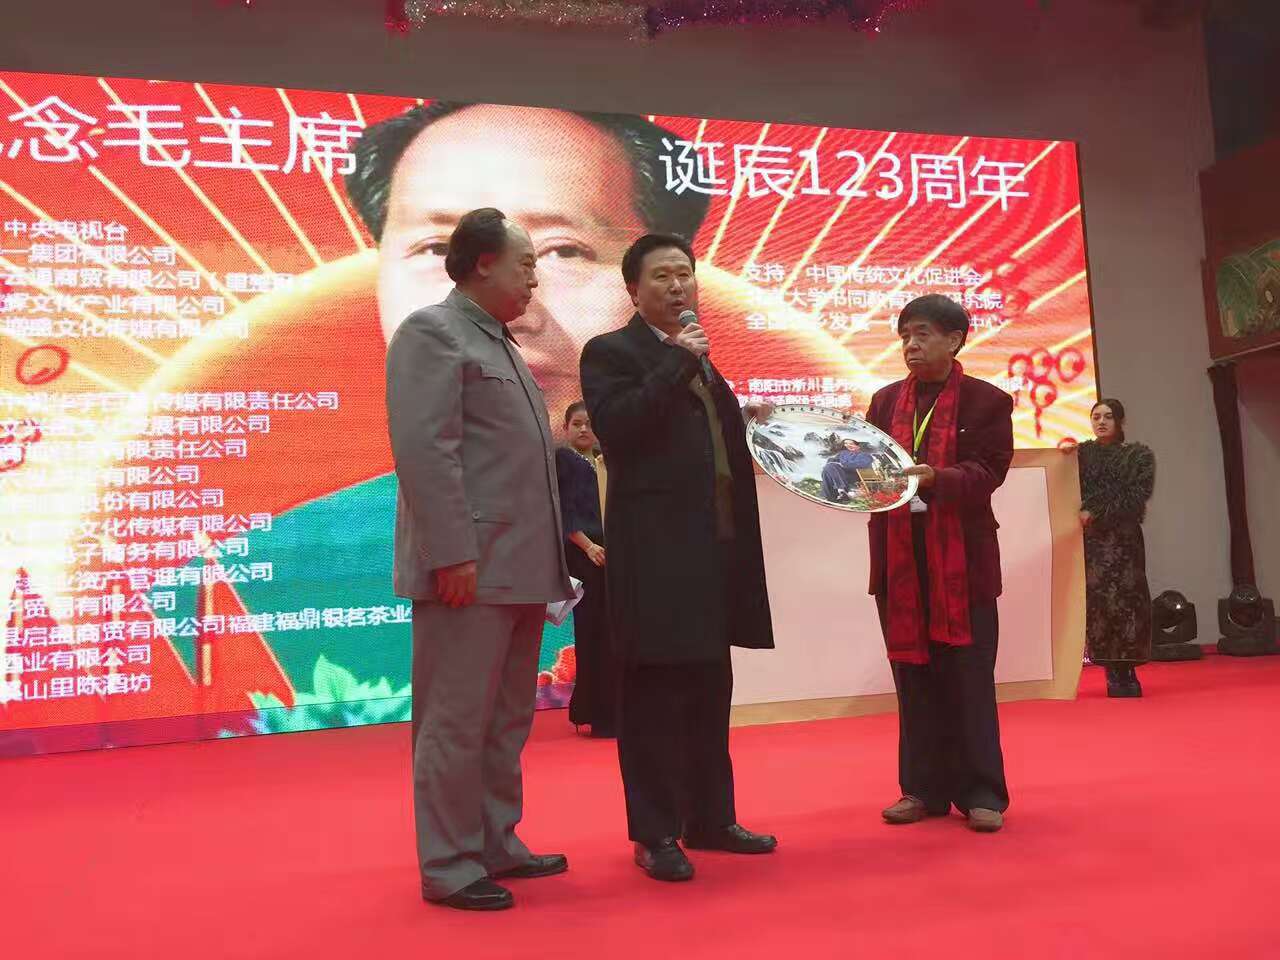 參加紀念毛主席誕辰123周年活動